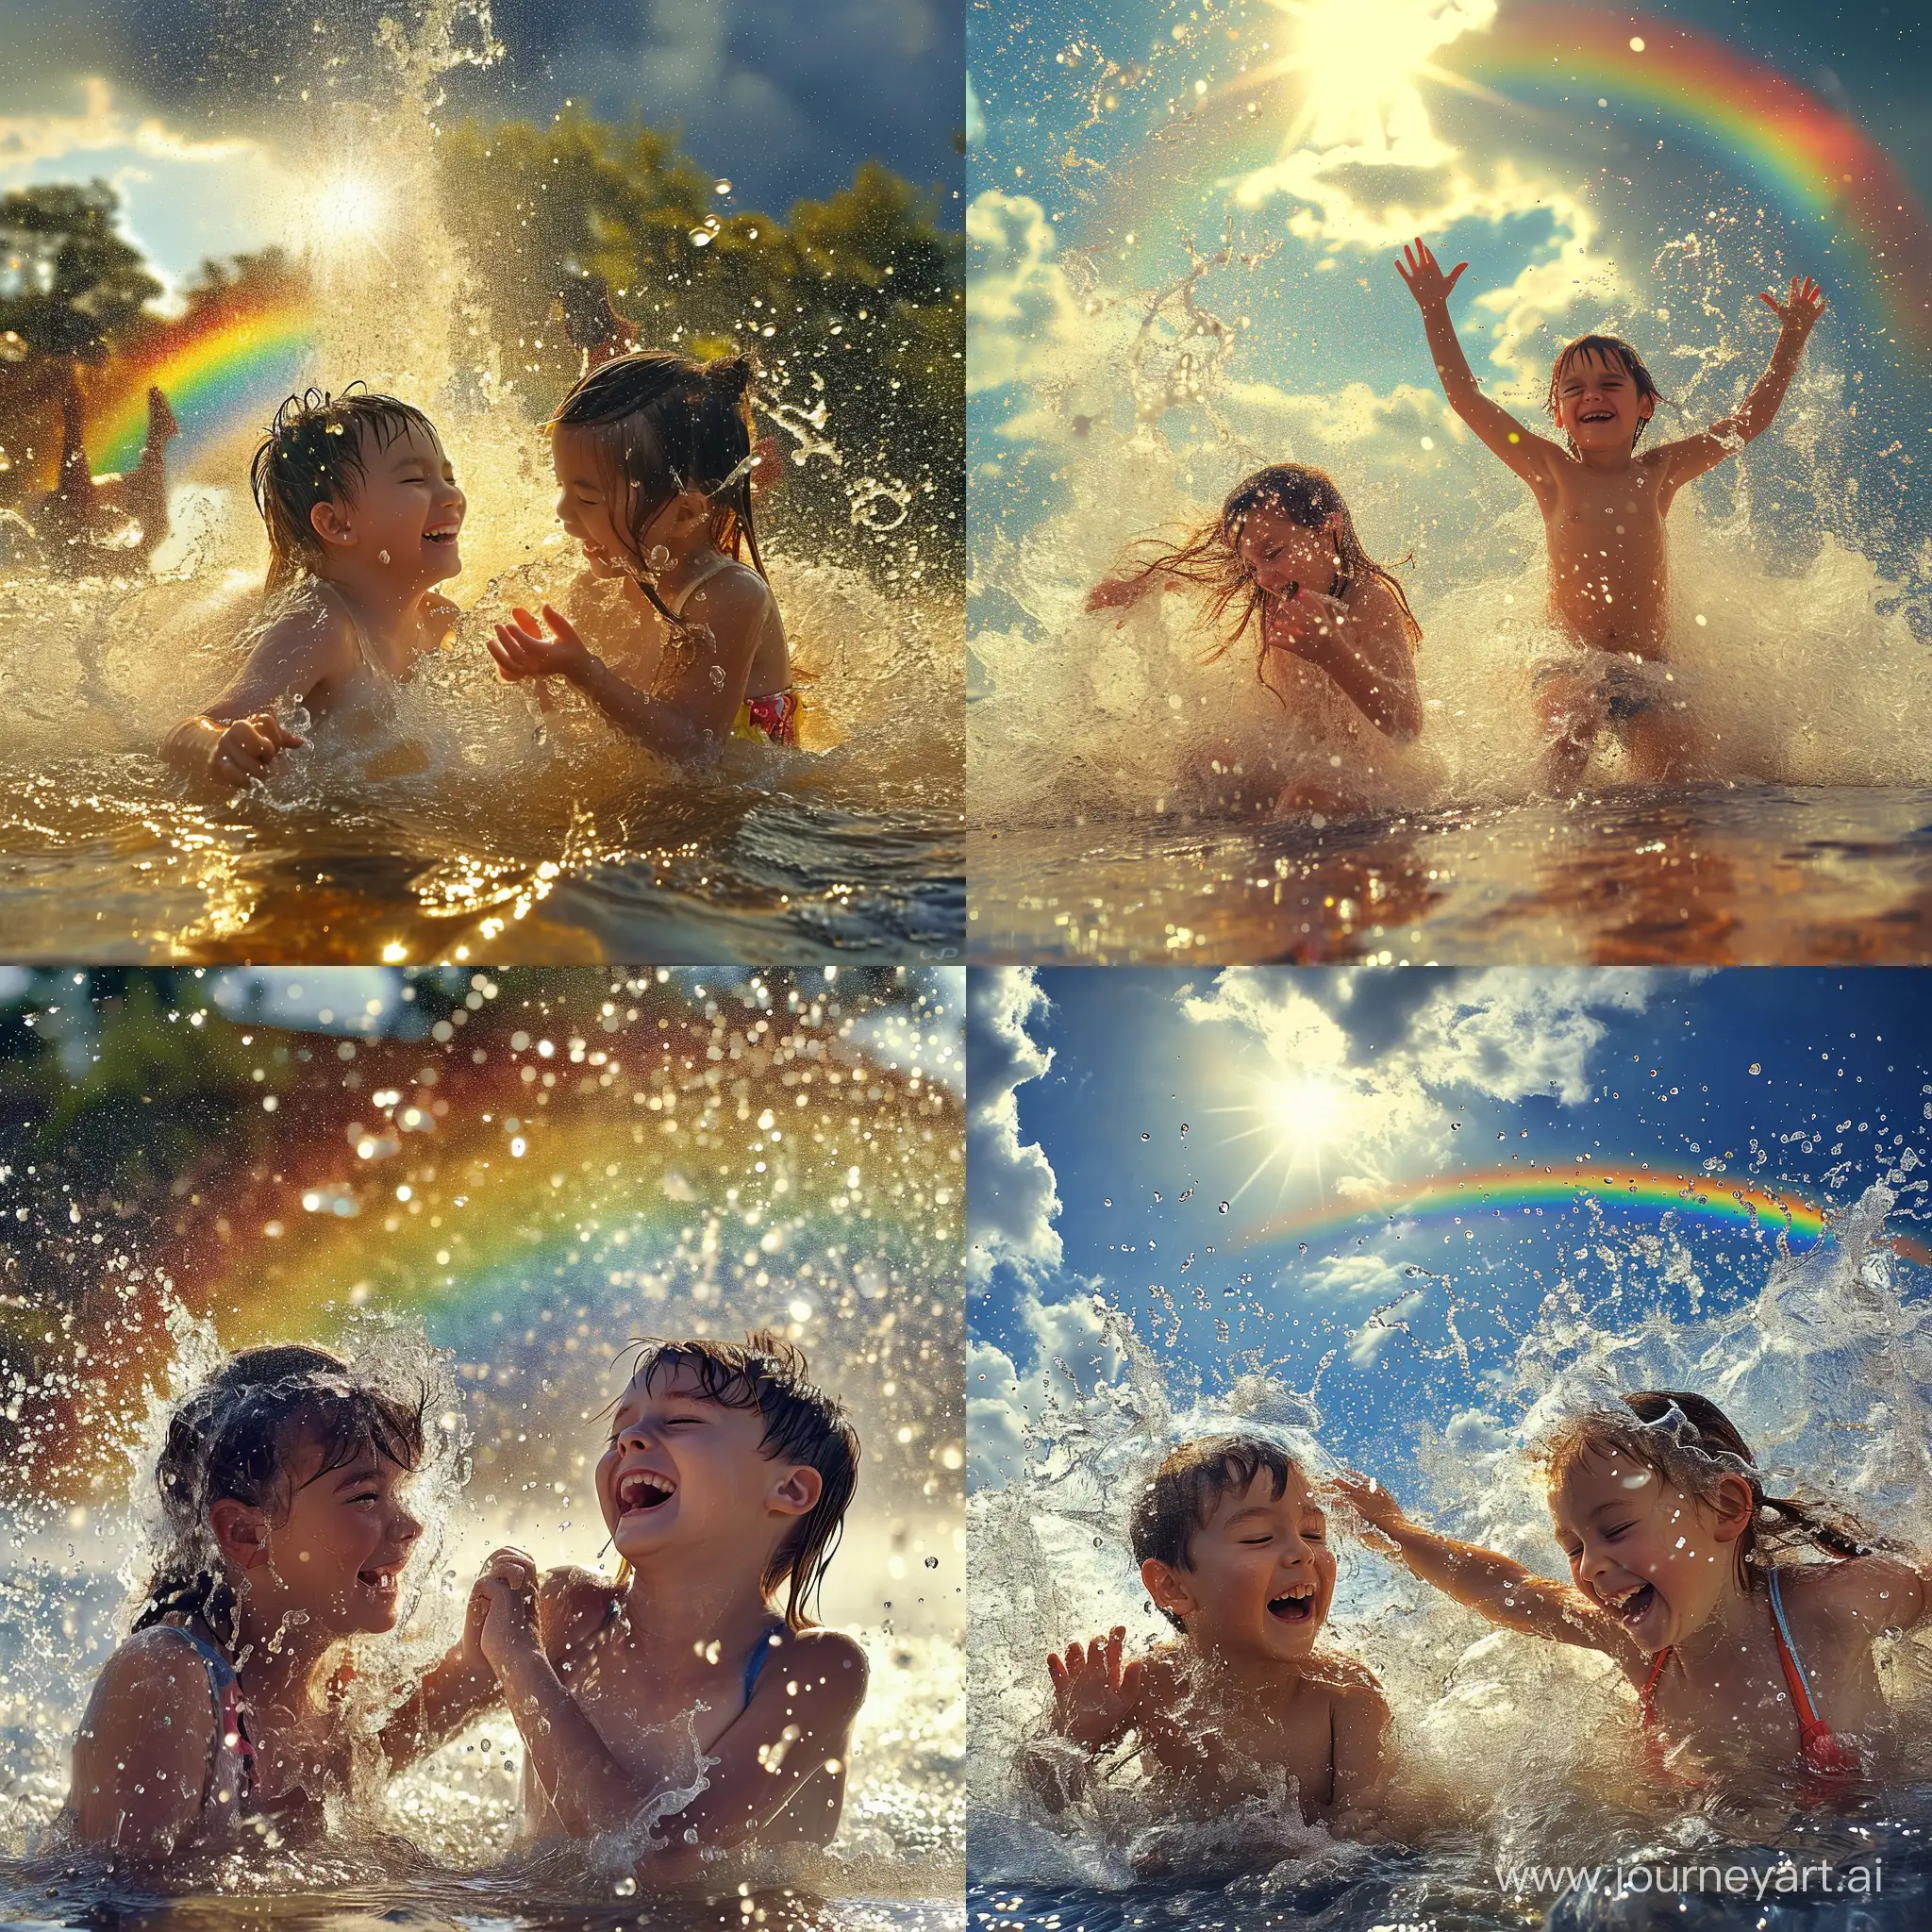 Мальчик и девочка веселятся и играют под летним проливным дождём, светит солнце и в небе видна радуга, фотография, гиперреализм, высокое разрешение